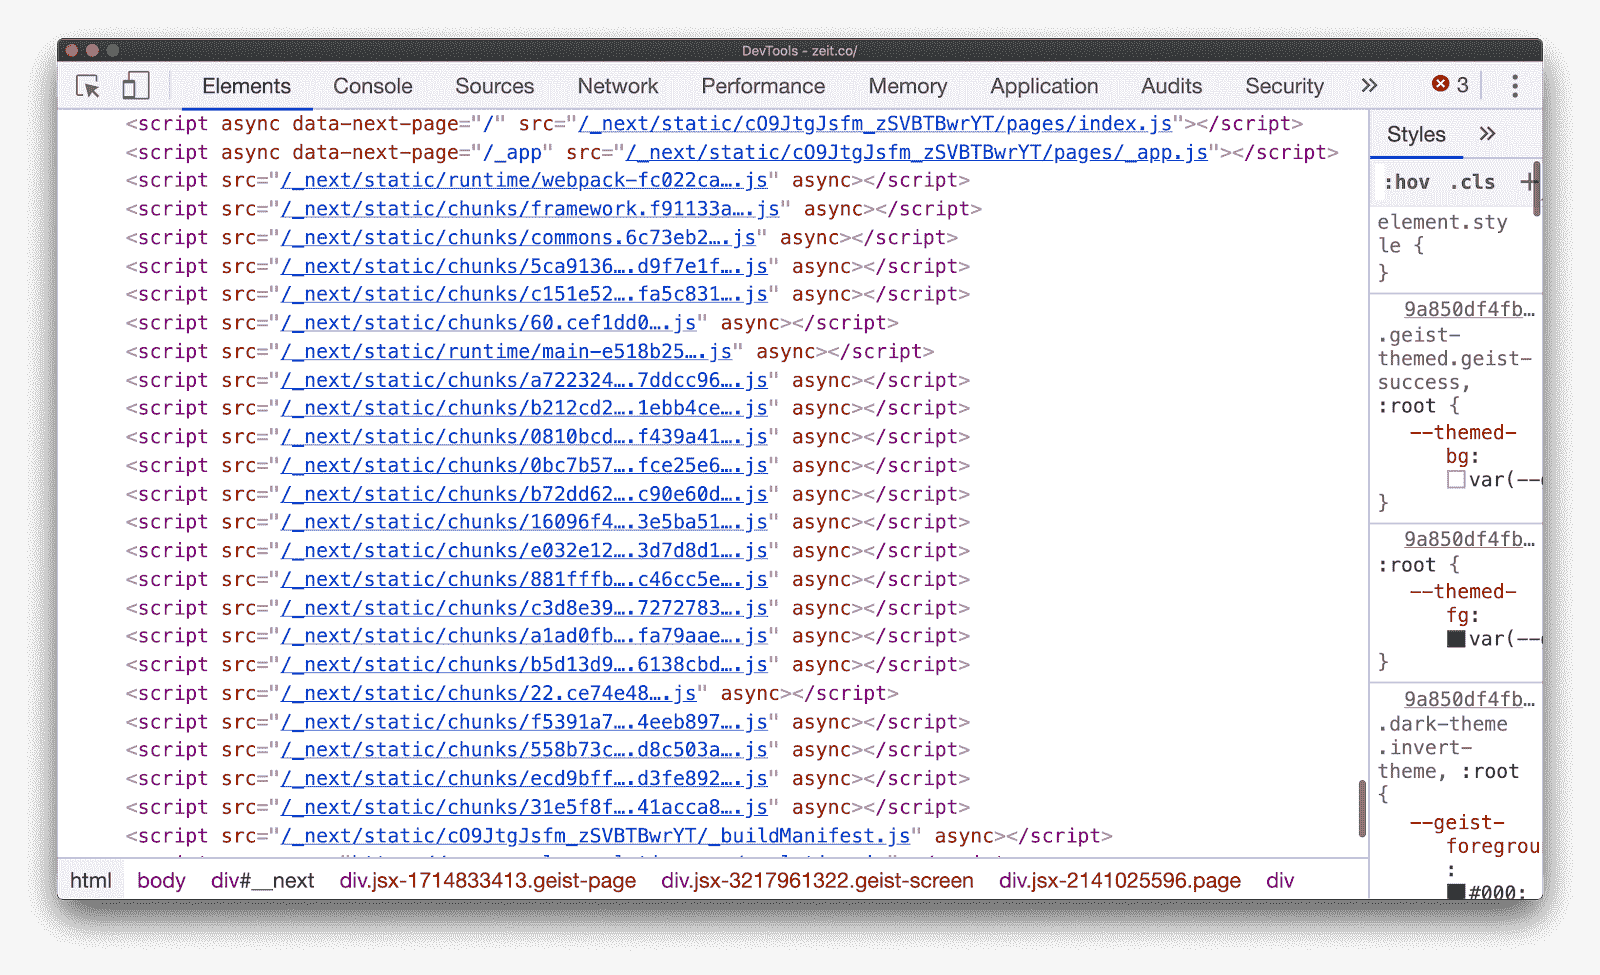 Resultado de varios fragmentos compartidos en una aplicación de Next.js.